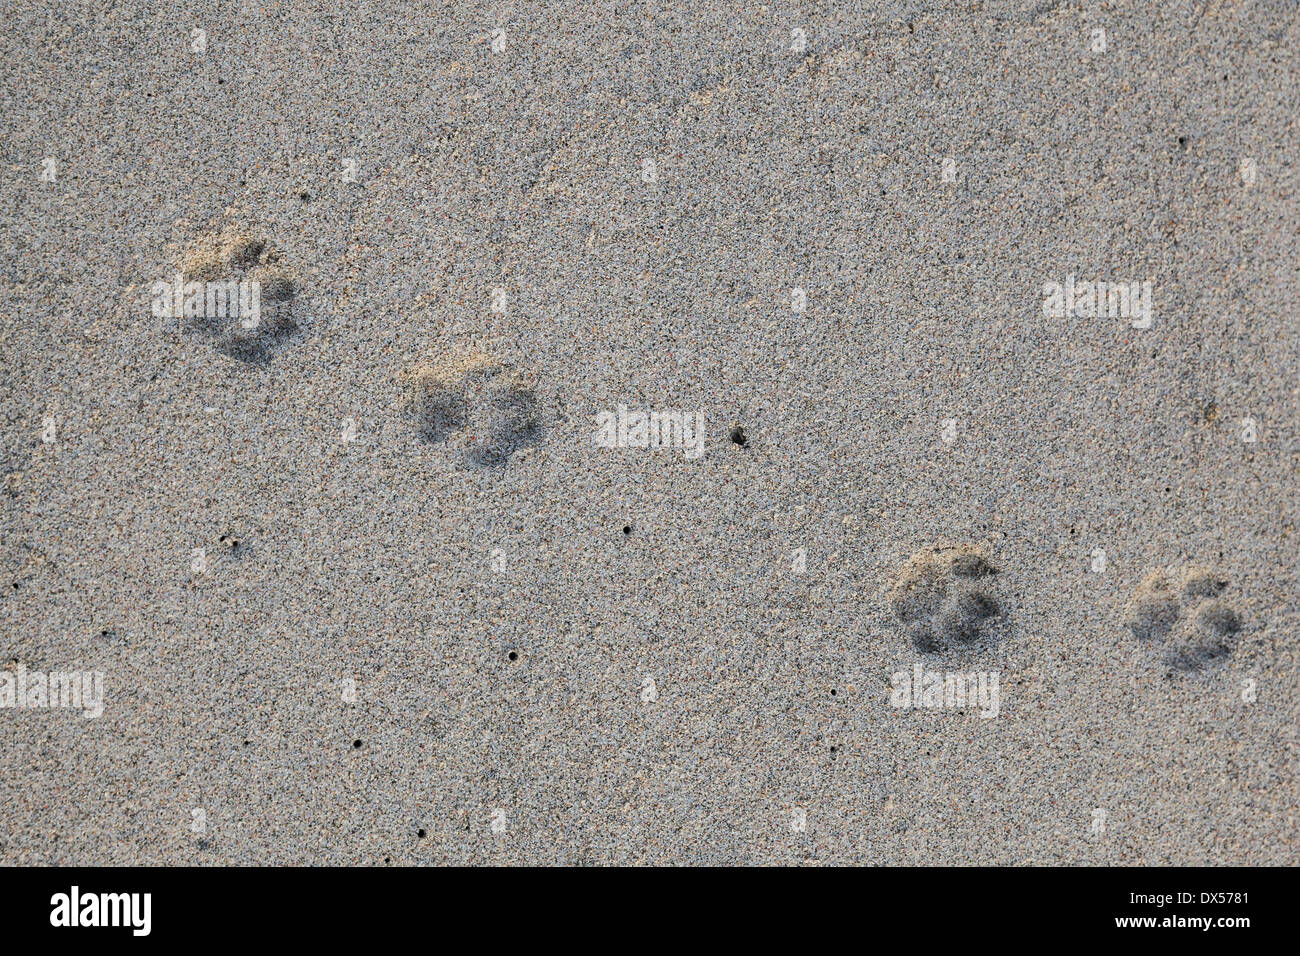 Huellas de gato patas en la arena, Omán Foto de stock